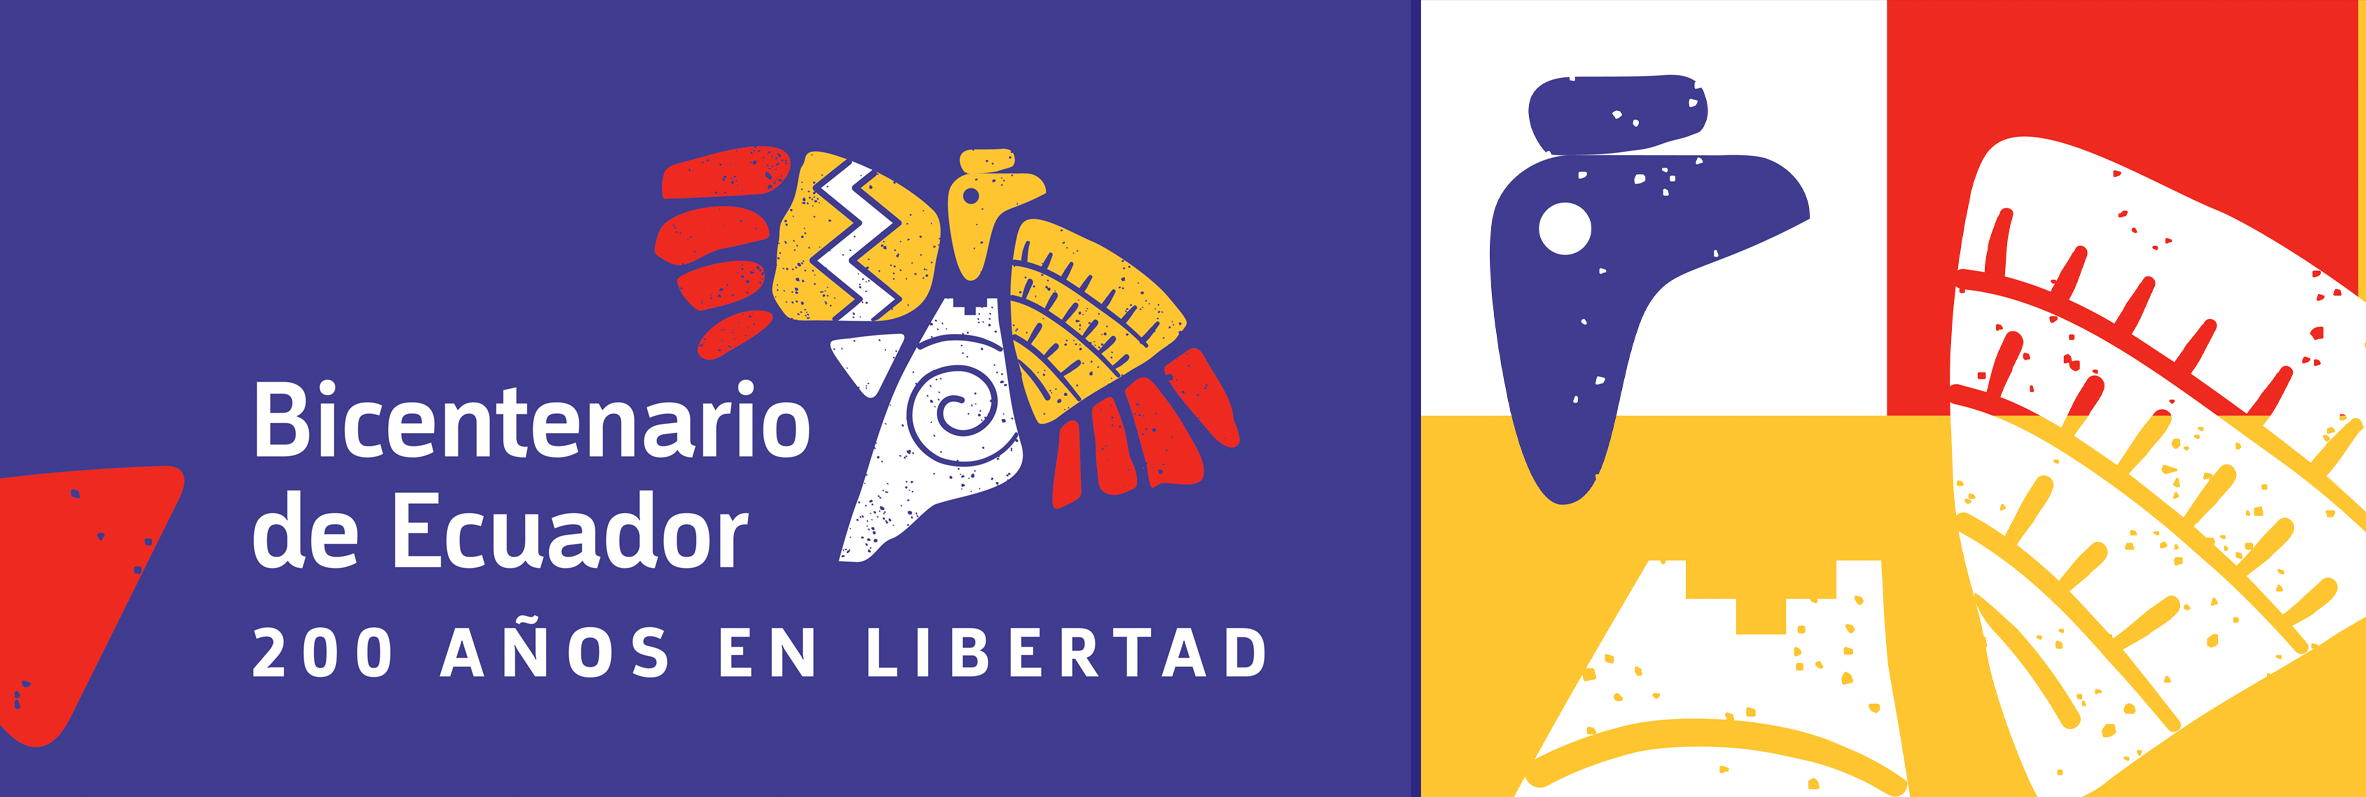 Bicentenario de la Independencia del Ecuador: 200 años después